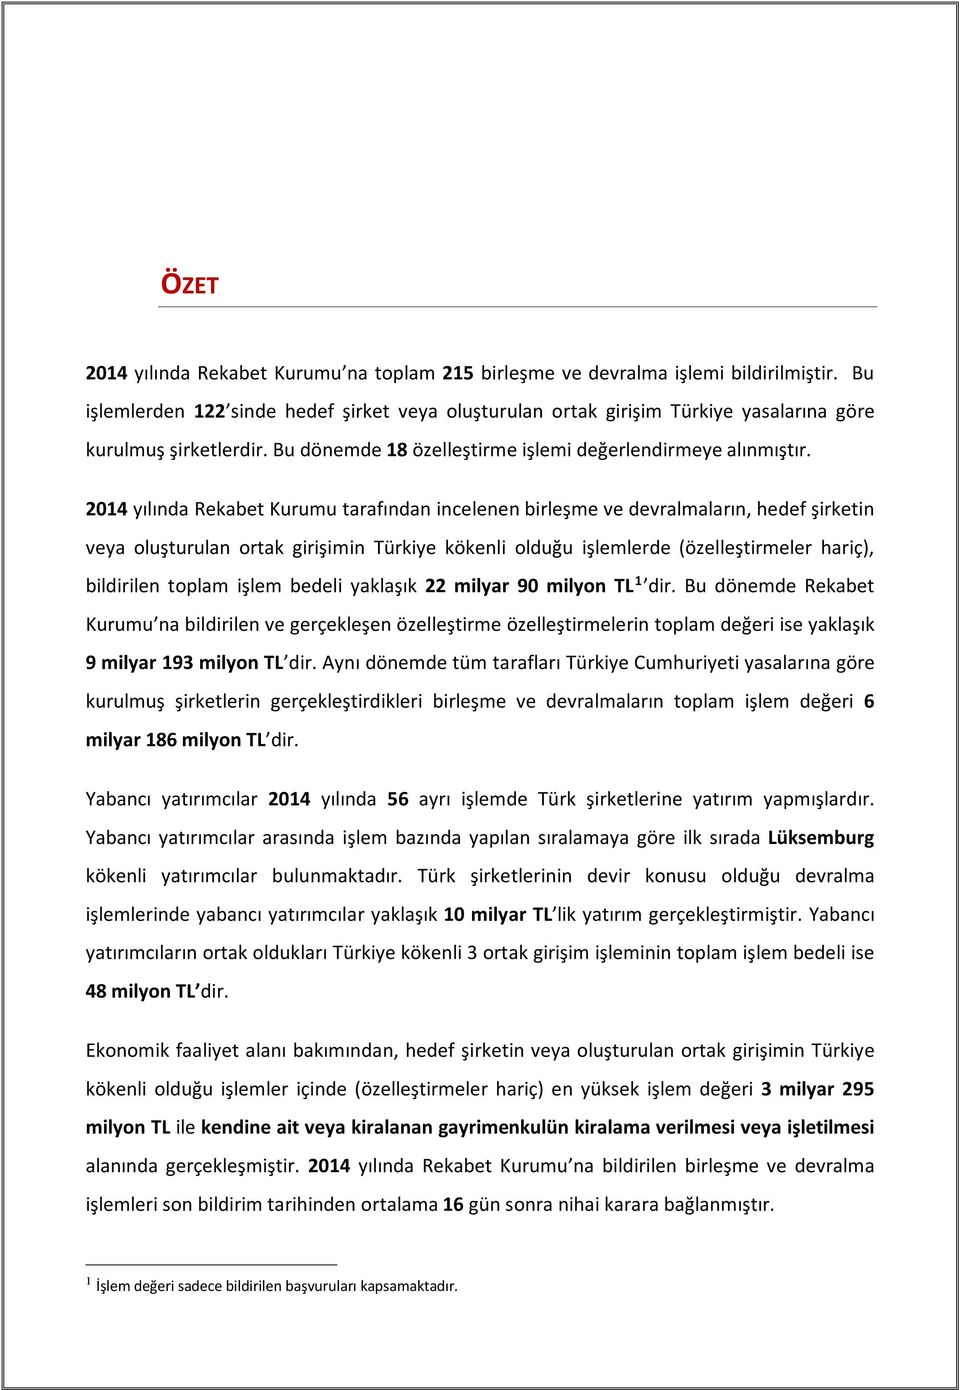 2014 yılında Rekabet Kurumu tarafından incelenen birleşme ve devralmaların, hedef şirketin veya oluşturulan ortak girişimin Türkiye kökenli olduğu işlemlerde (özelleştirmeler hariç), bildirilen